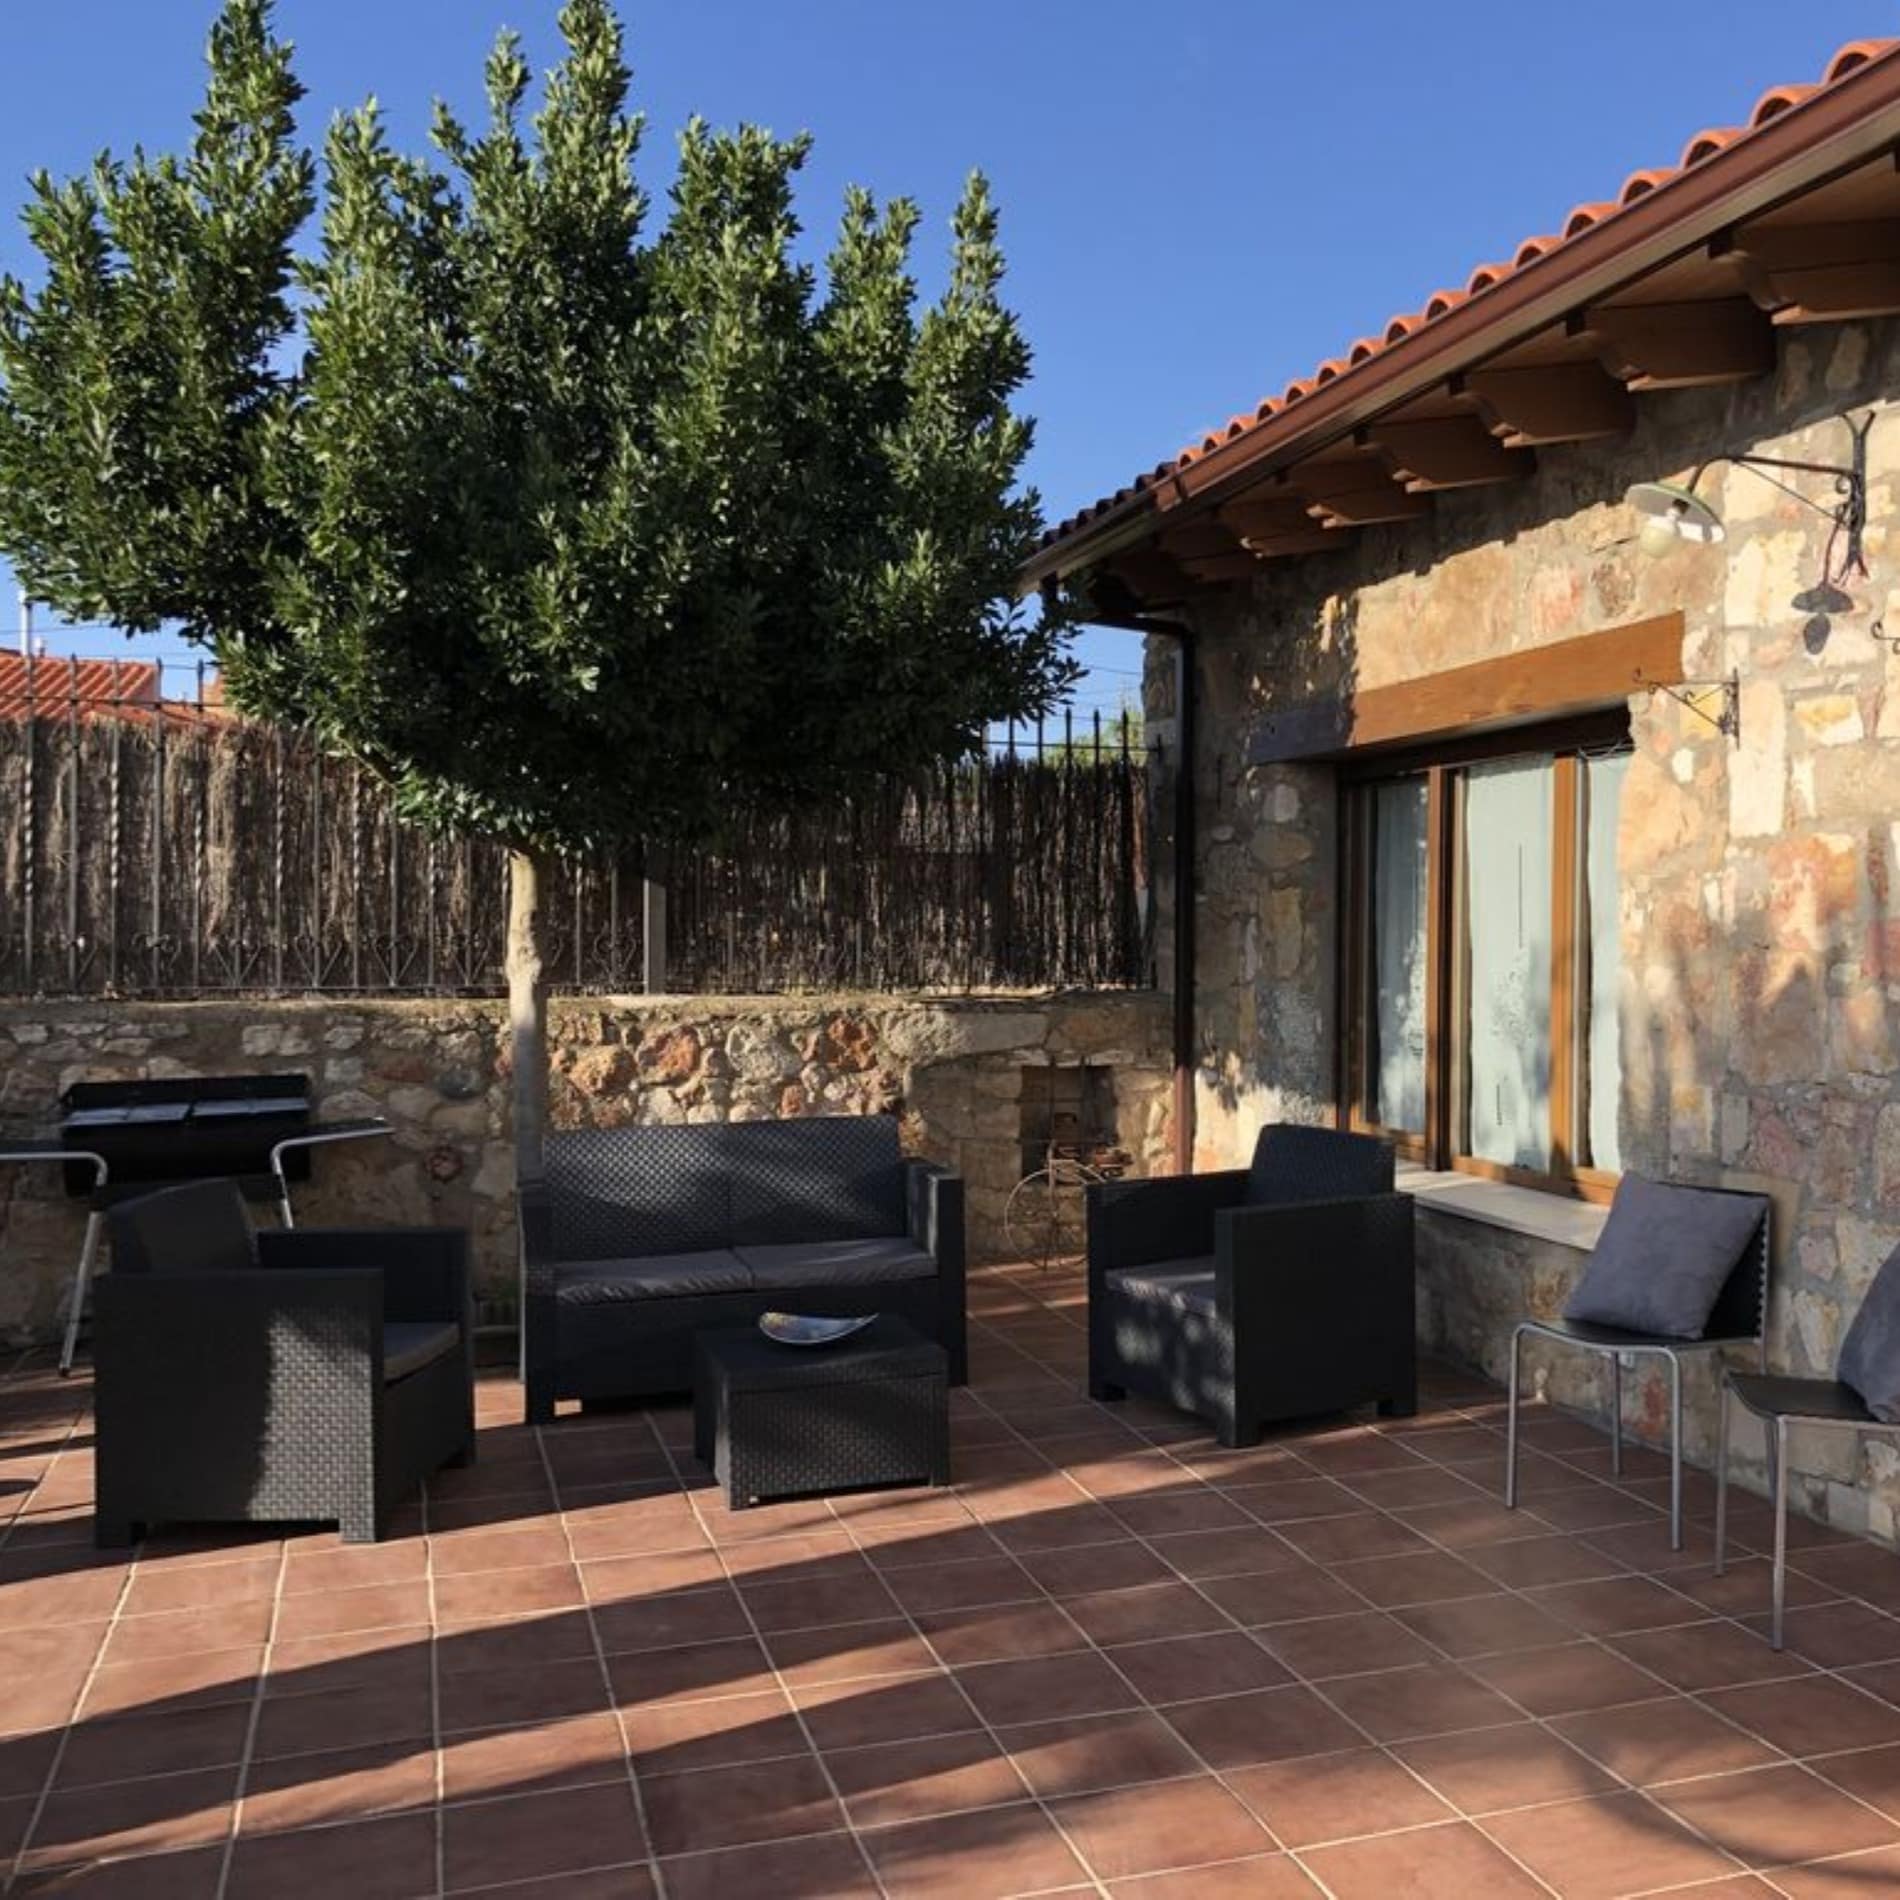 Casa rural en Zamora con amplio patio exterior